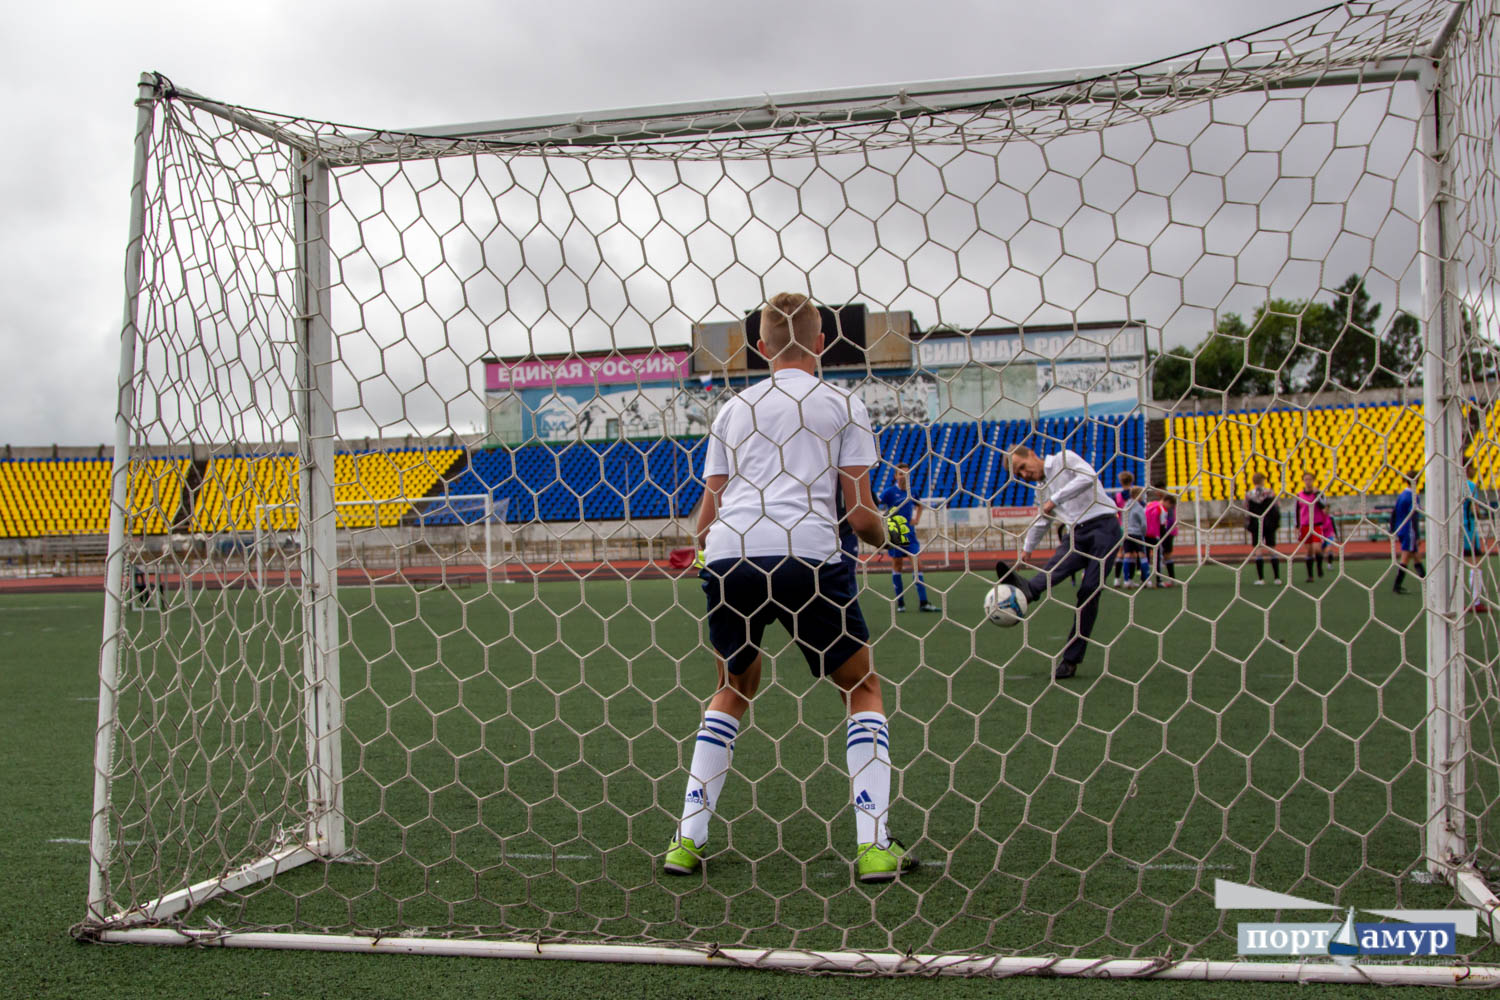 Дворовые футбольные команды борются в Благовещенске за поездку в Санкт-Петербург